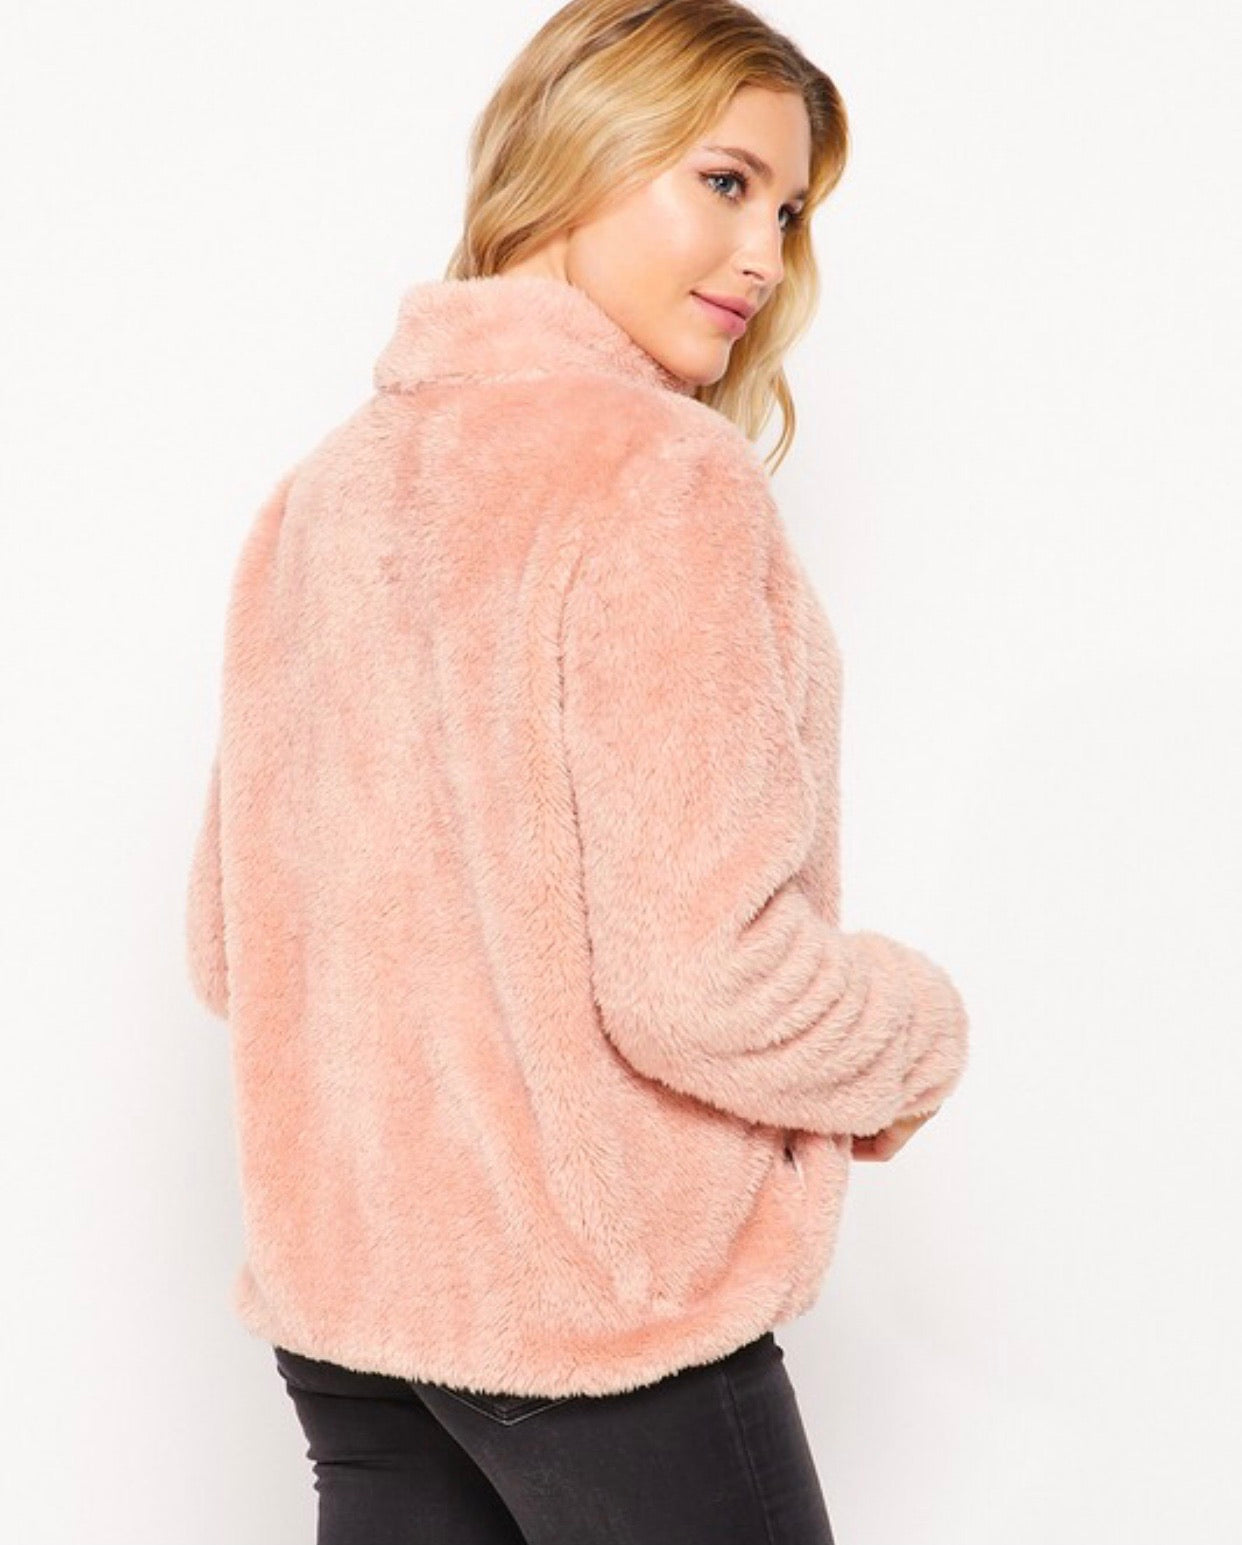 Cozy Dreams Fuzzy Jacket - Alexa Maries